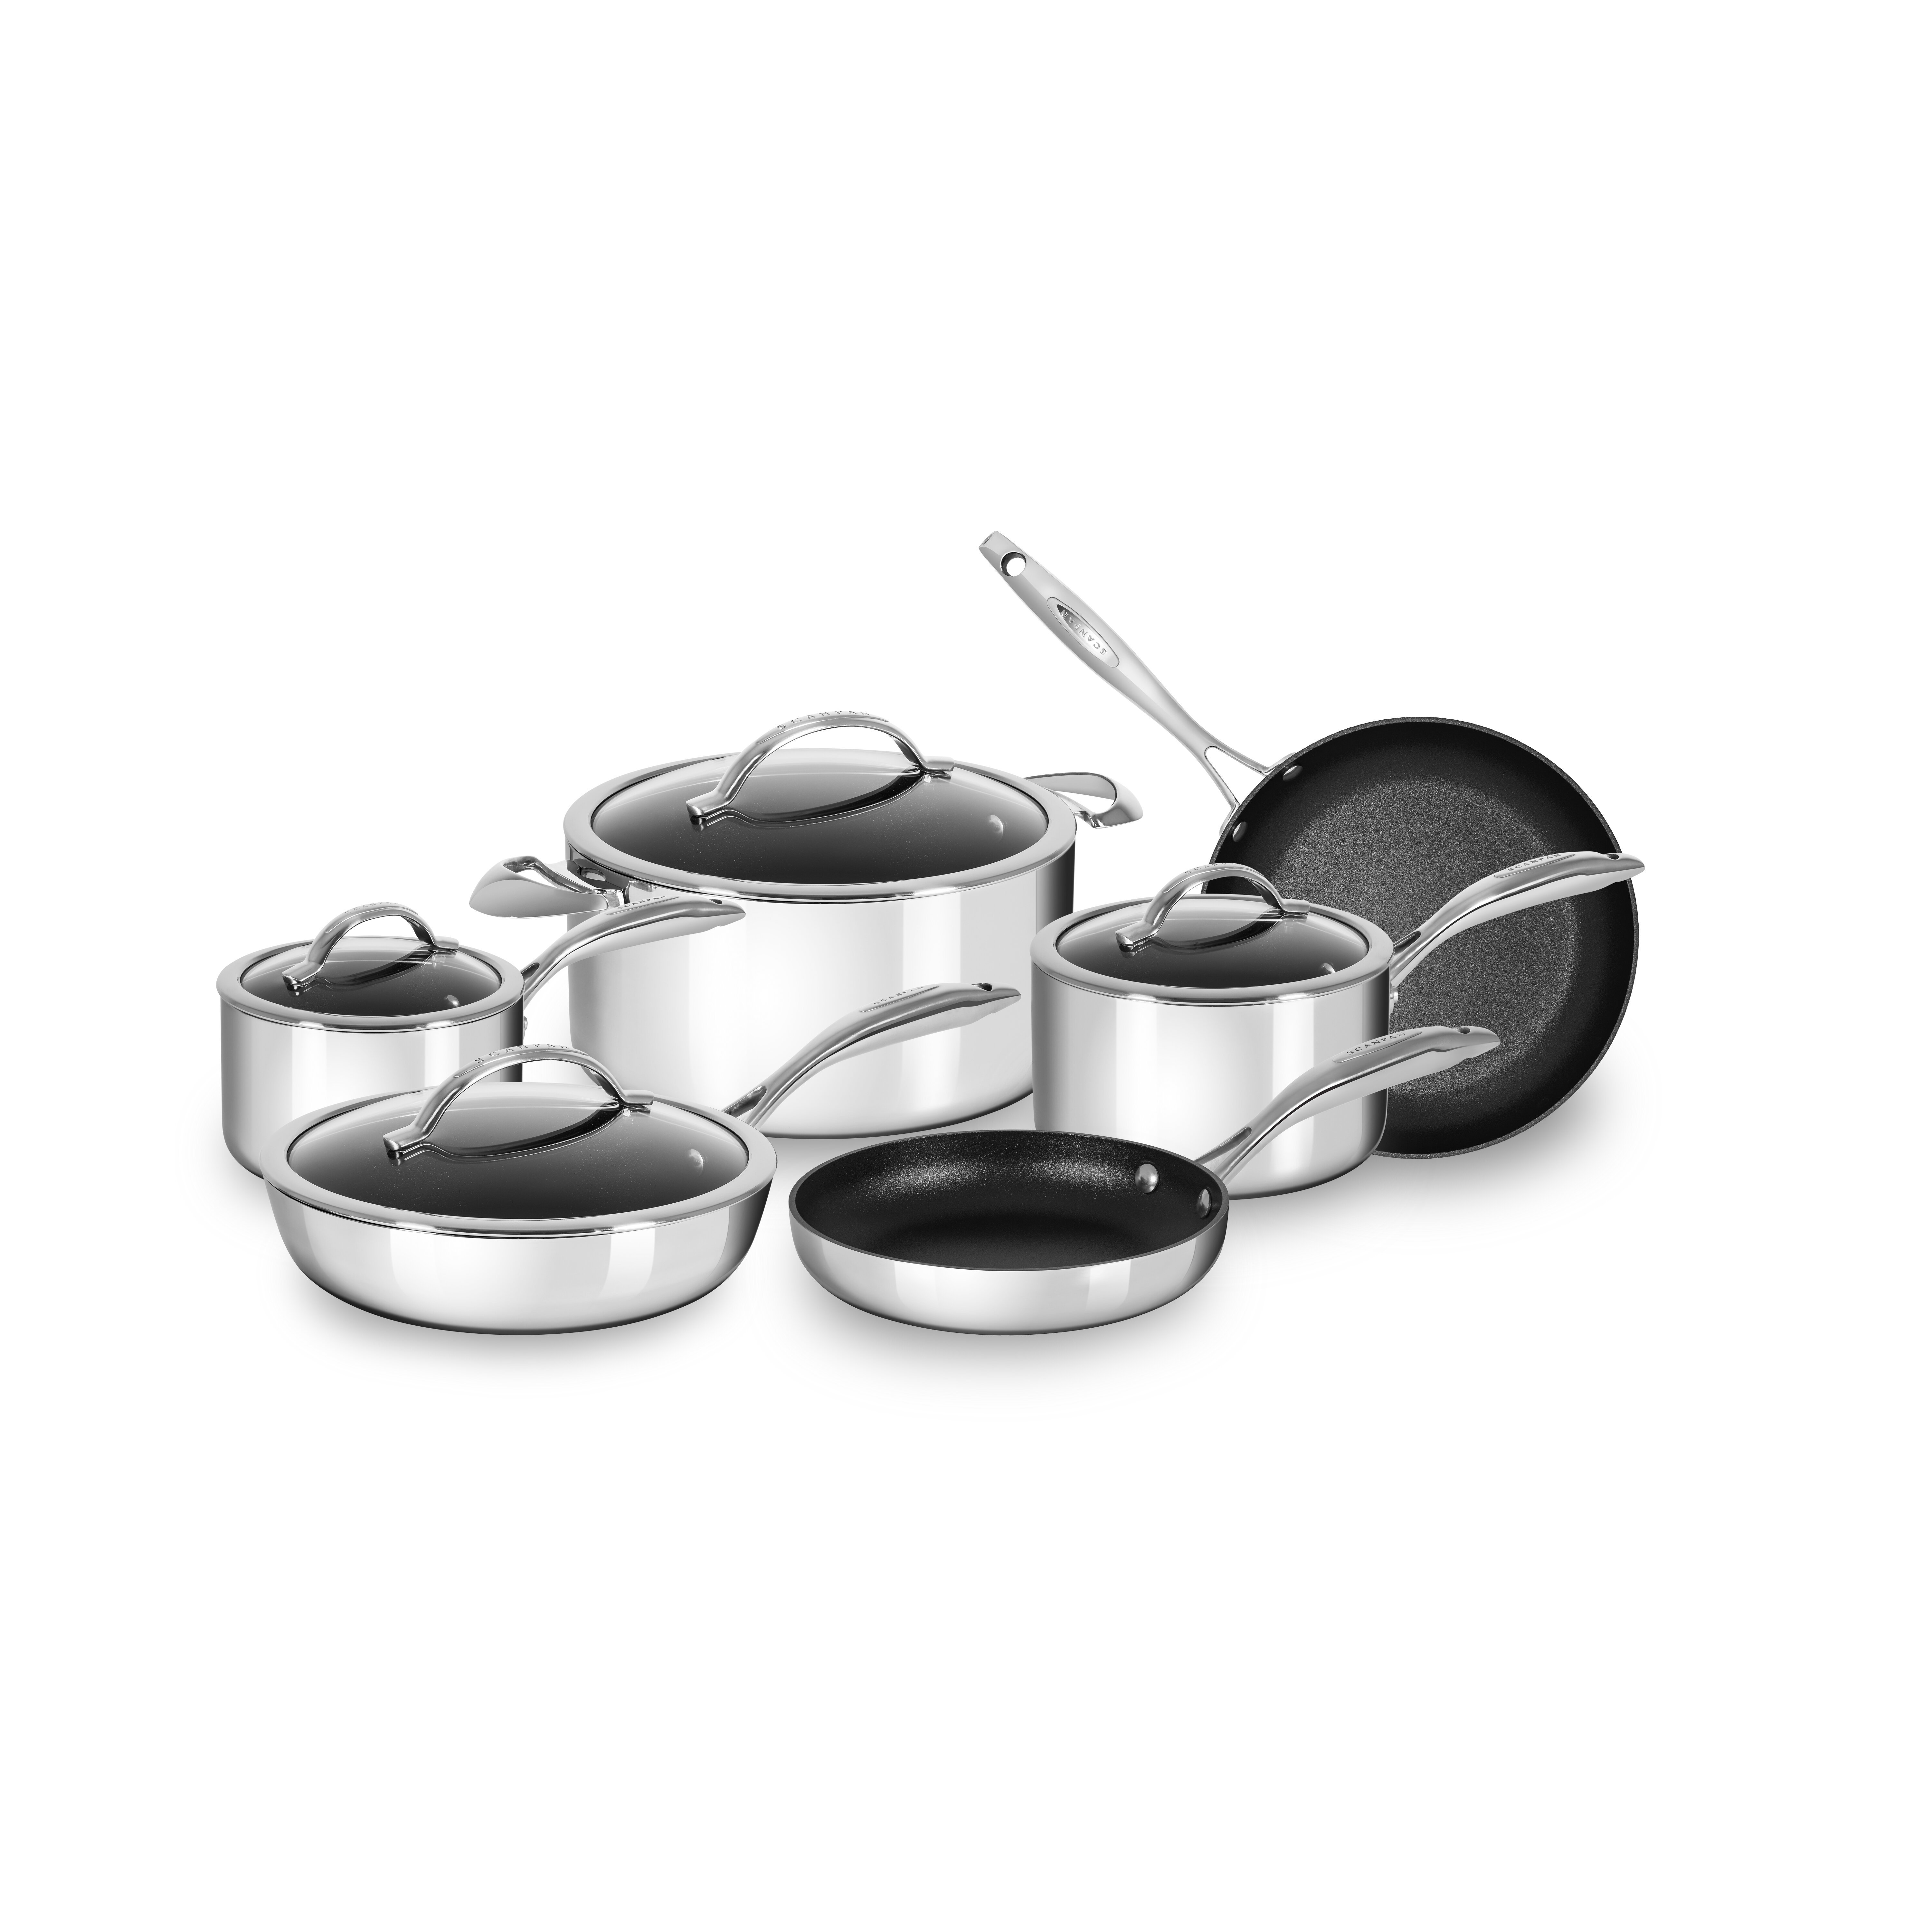 https://assets.wfcdn.com/im/19010960/compr-r85/8997/89975727/scanpan-haptiq-10-piece-stainless-steel-non-stick-cookware-set.jpg